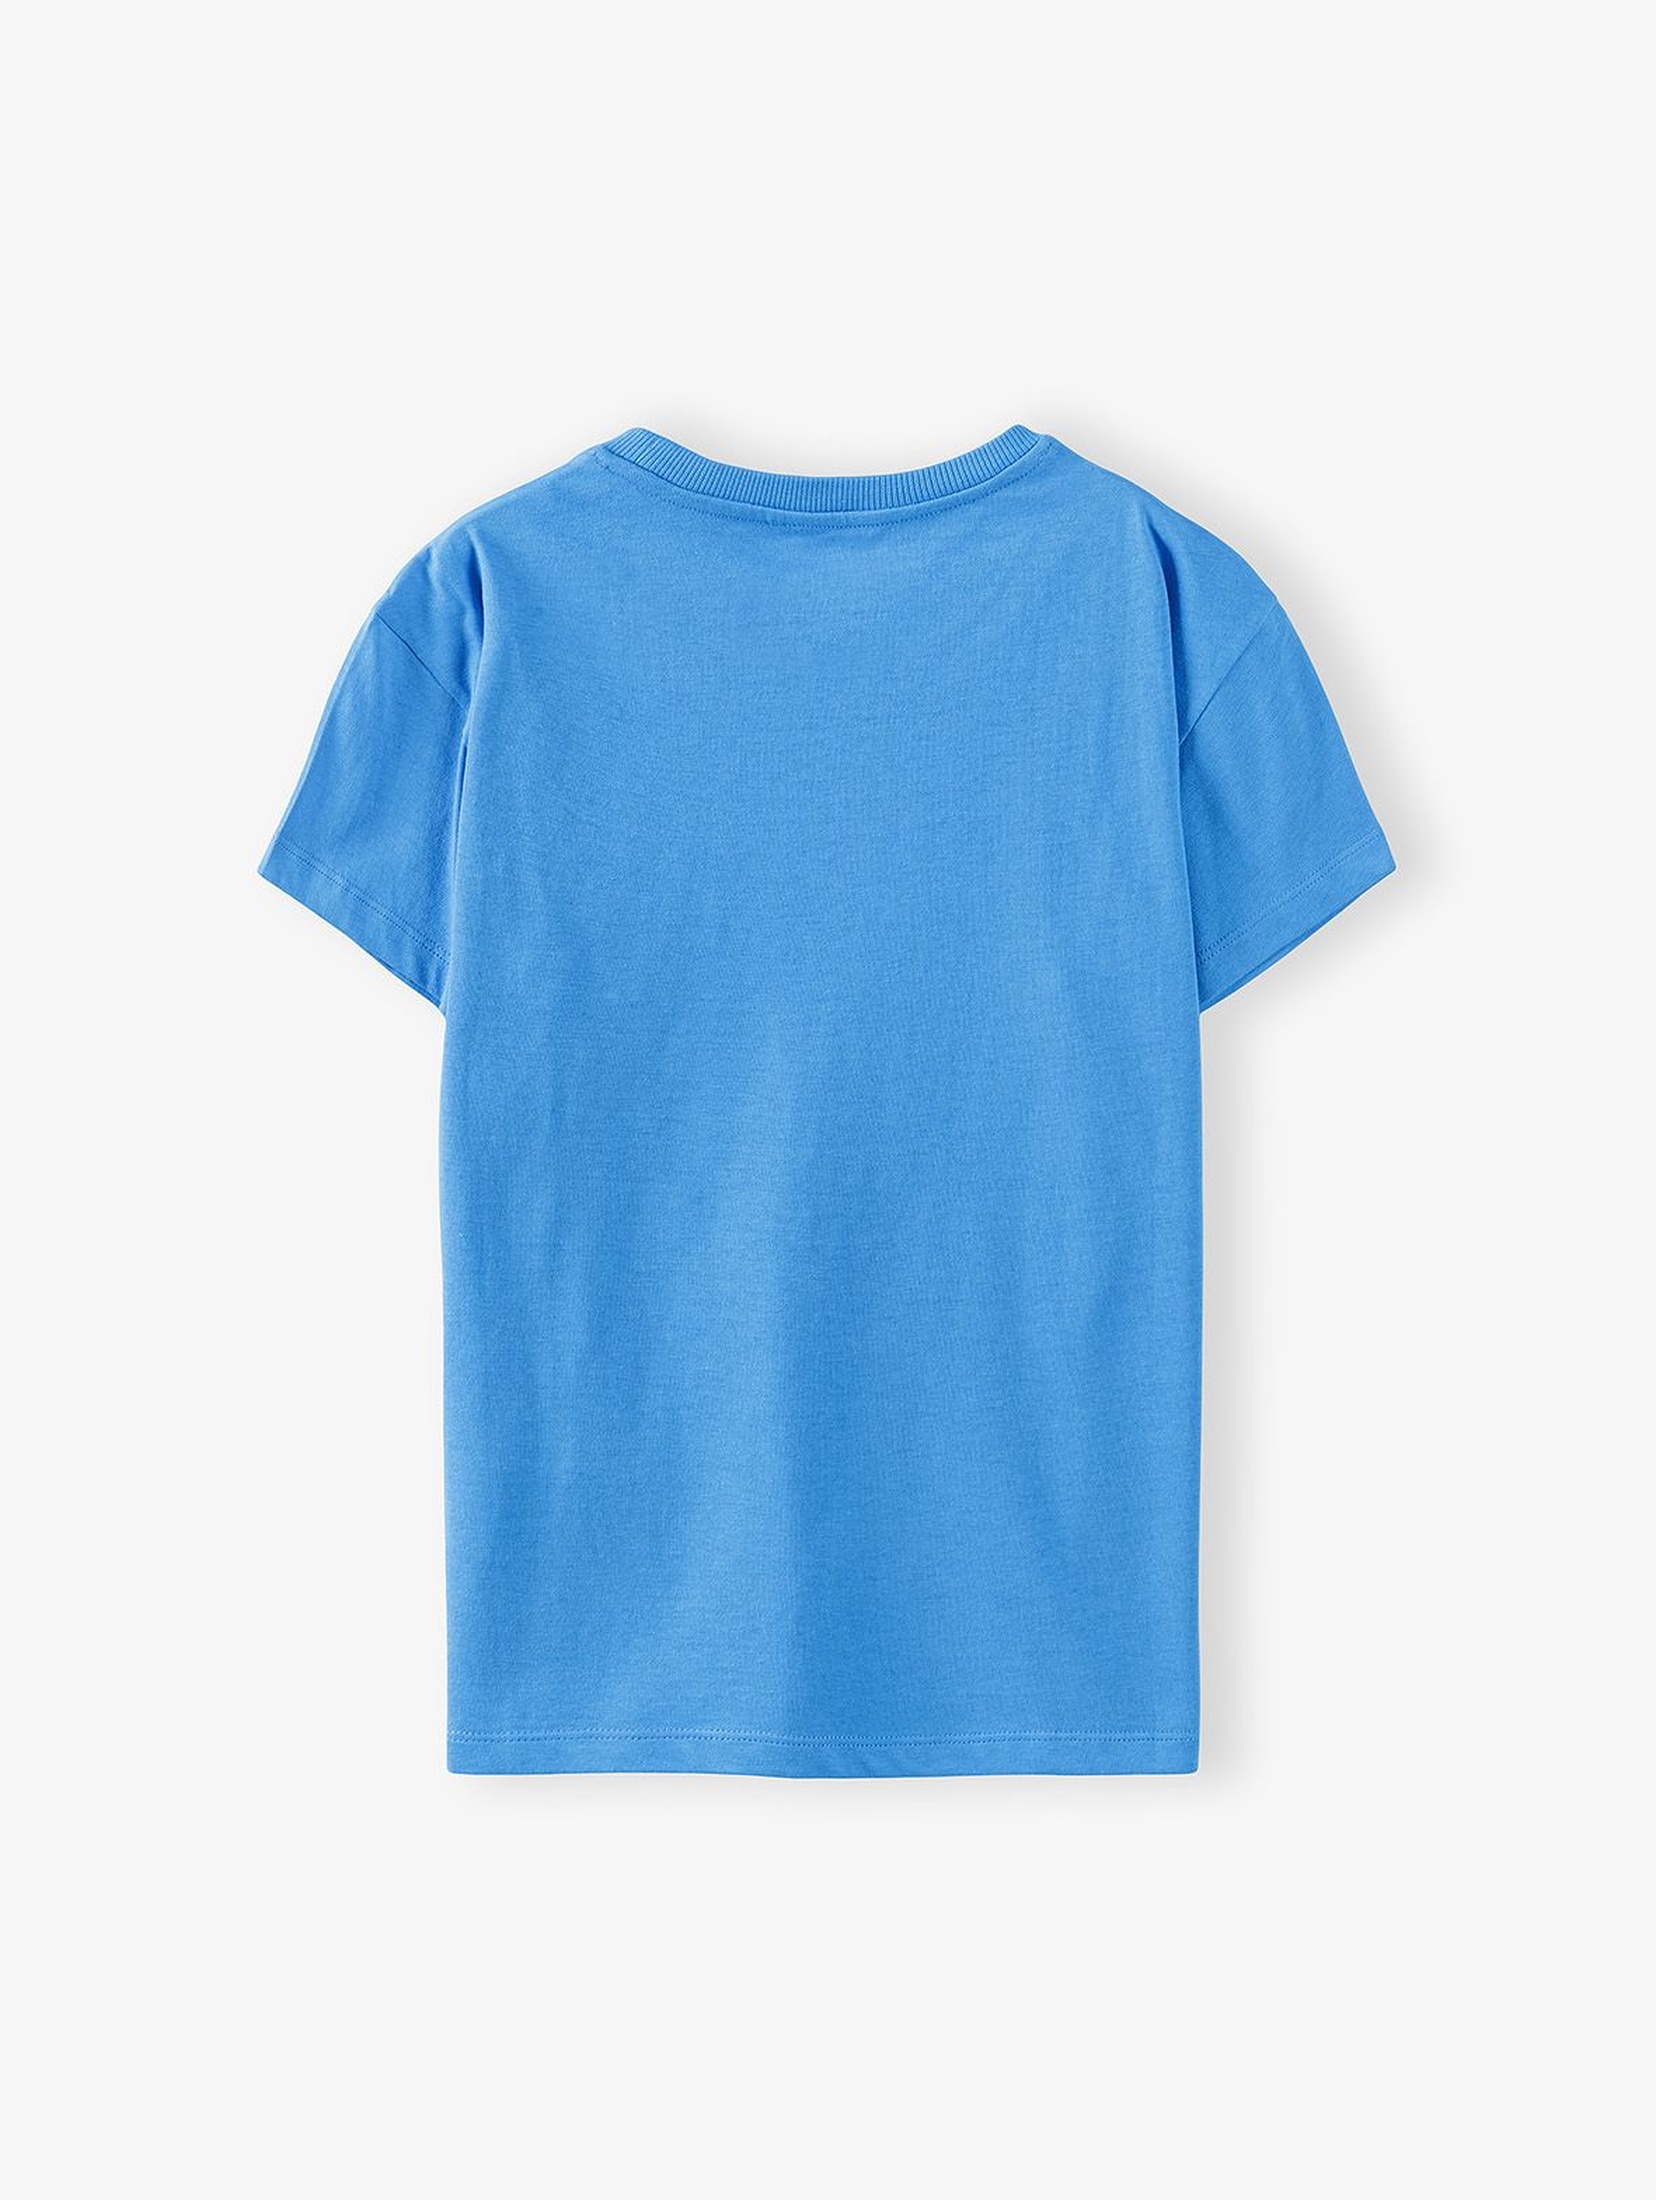 T-shirt chłopięcy w kolorze niebieskim z kieszonką